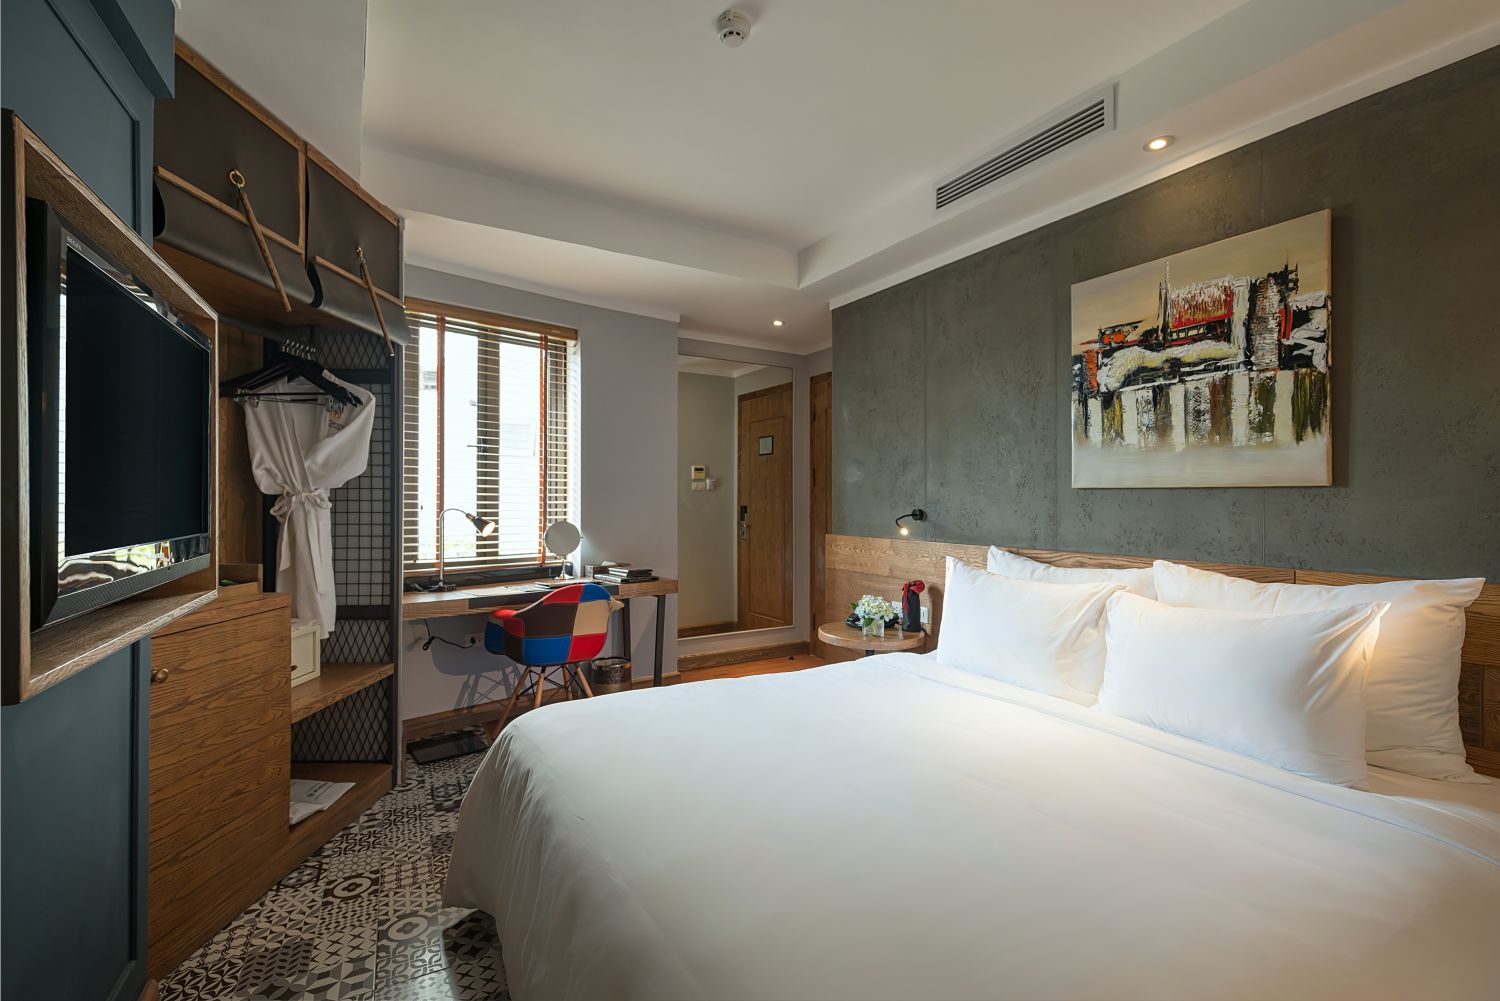 La Siesta Trendy Hotel Spa, khách sạn thời thượng bậc nhất Hà thành 9